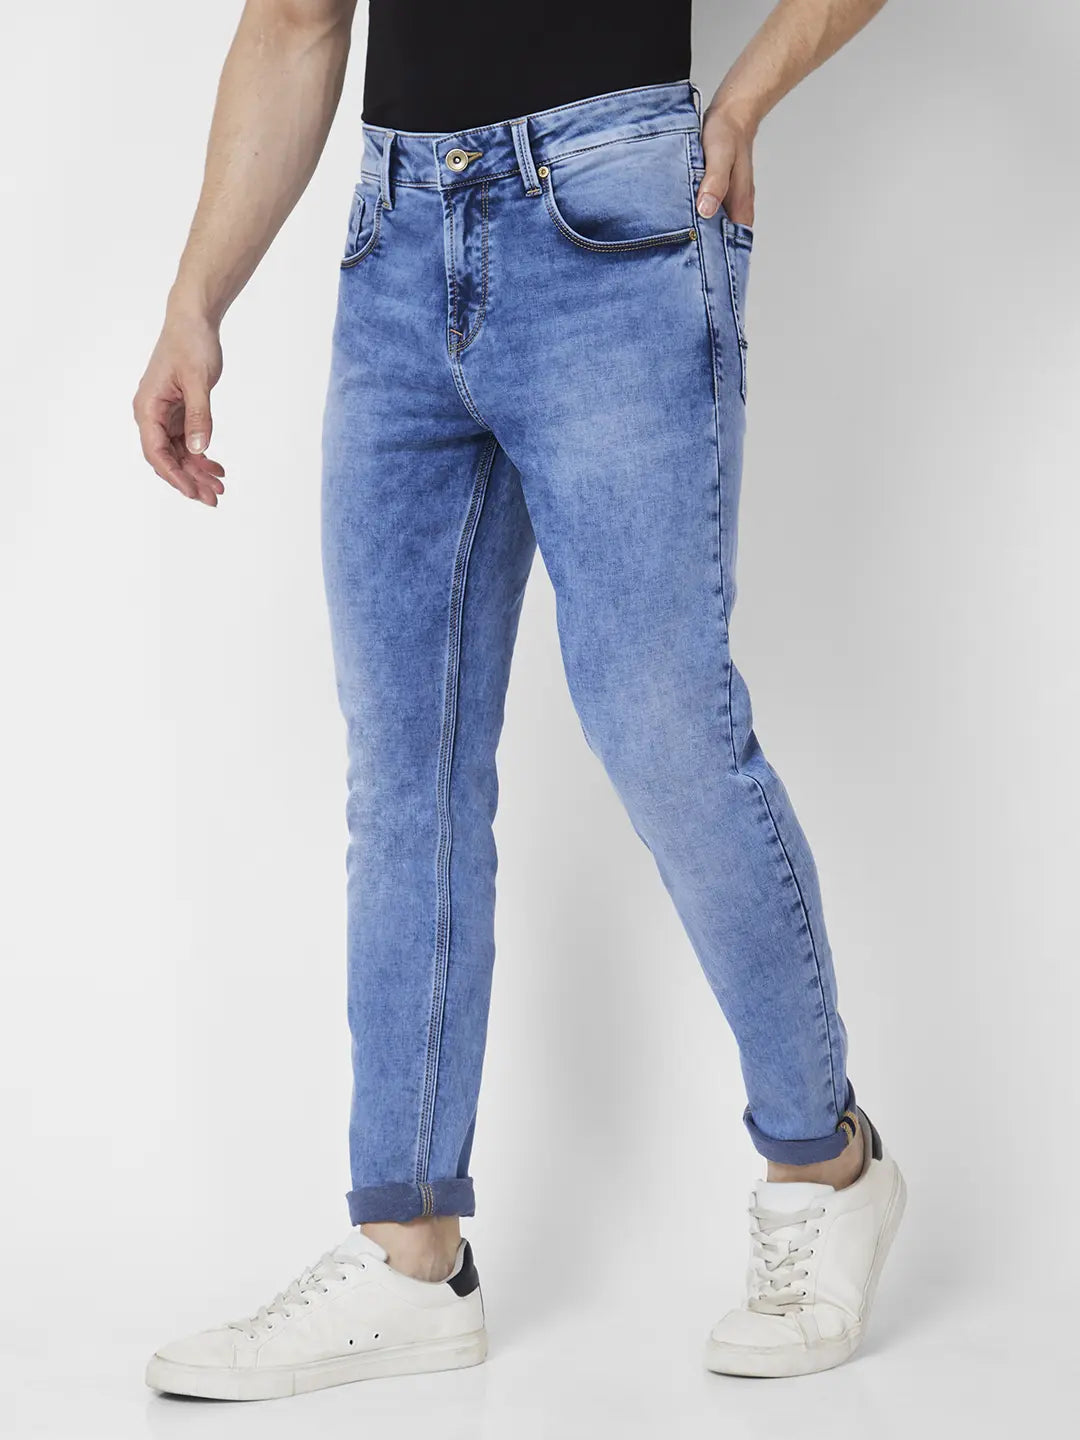 Buy Men Light Blue Cotton Stretch Slim Fit Jeans @ Rs3,799